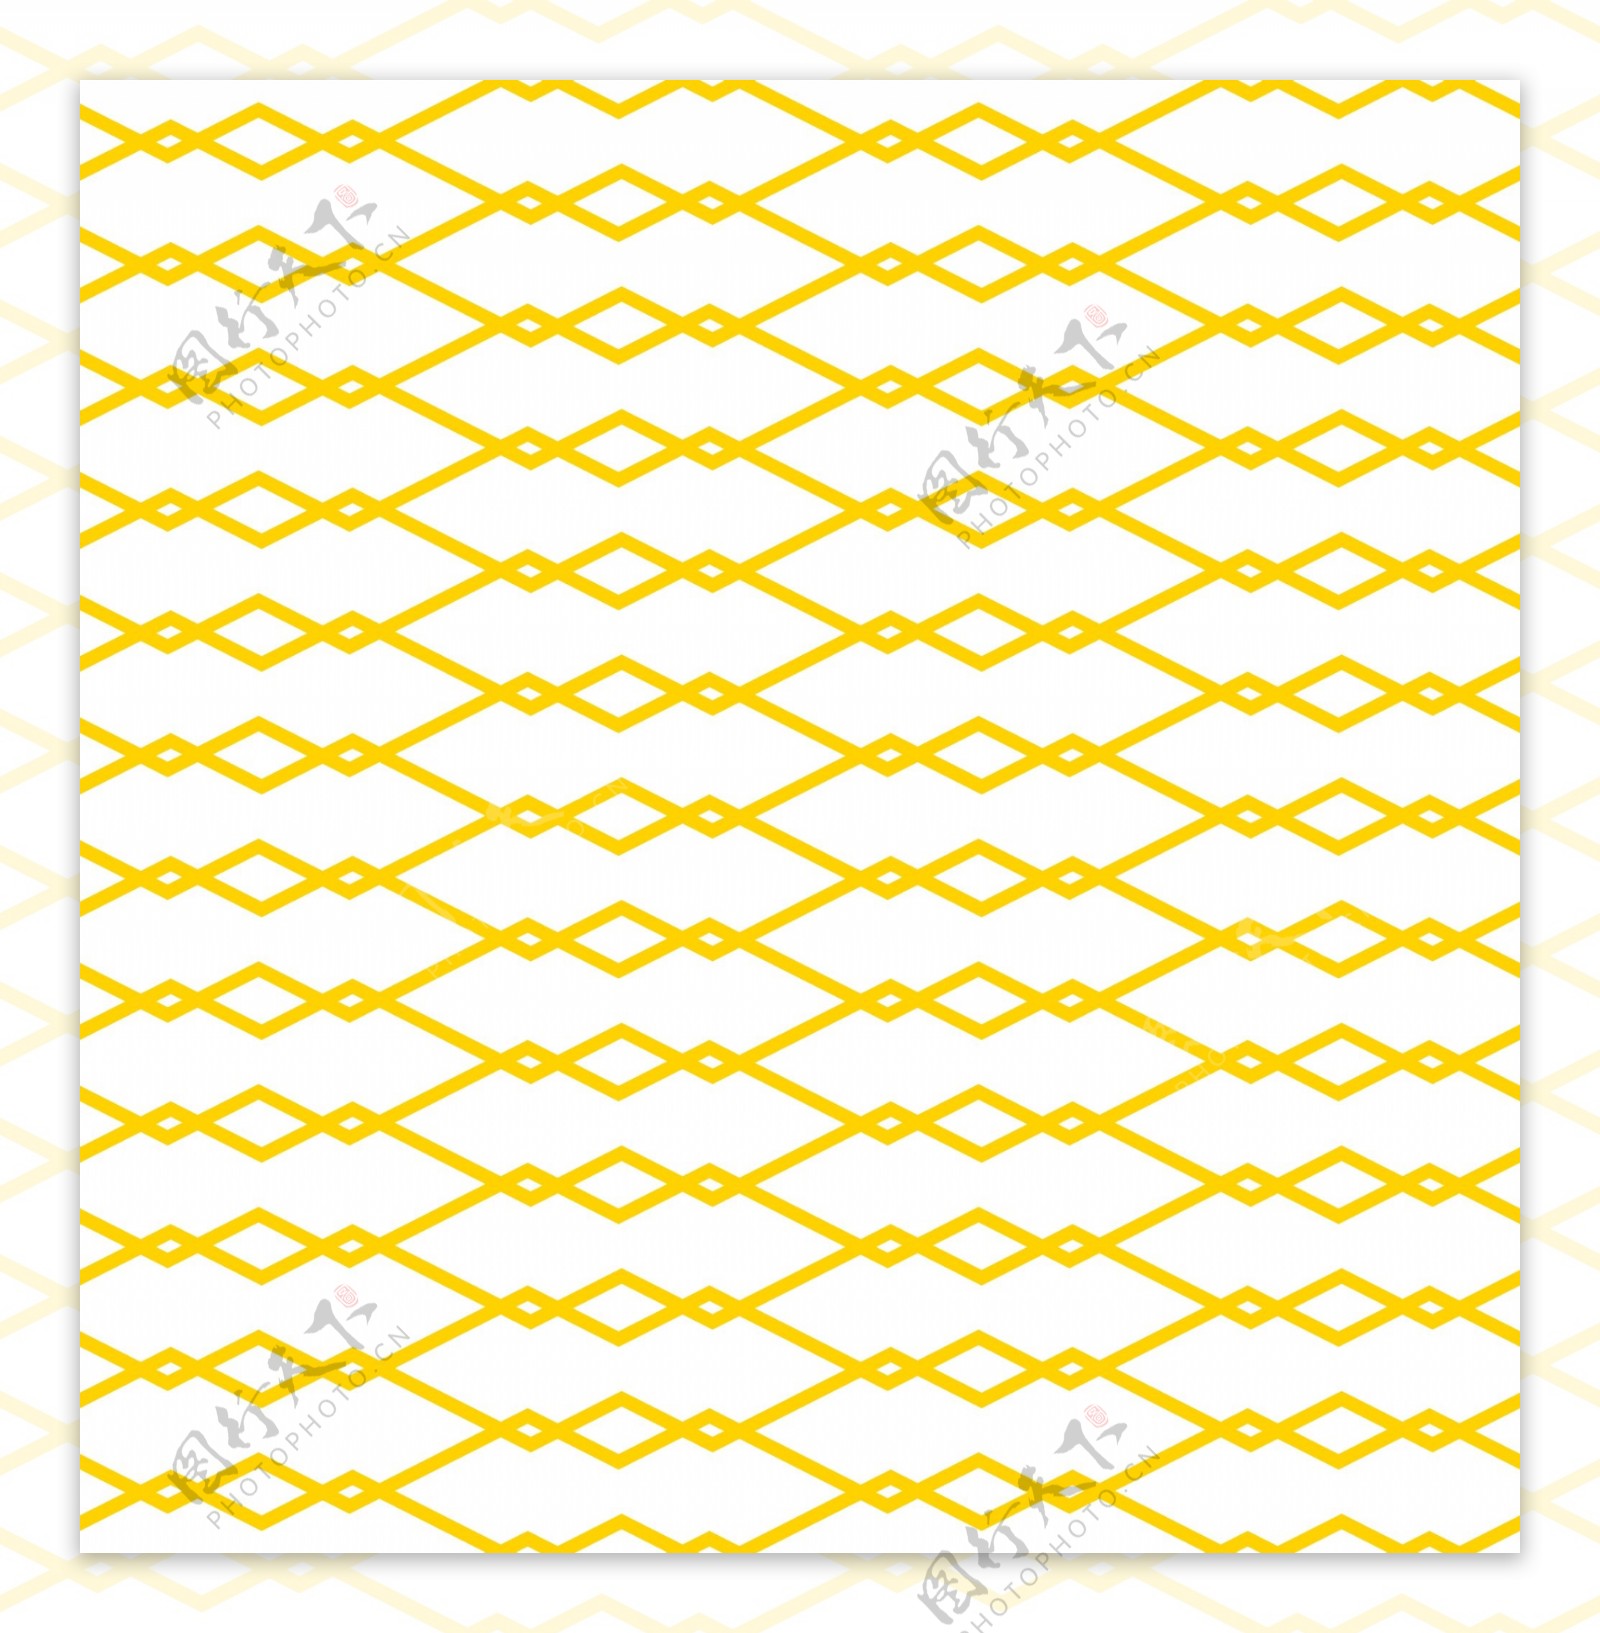 黄色小菱形鱼骨图案矢量素材背景